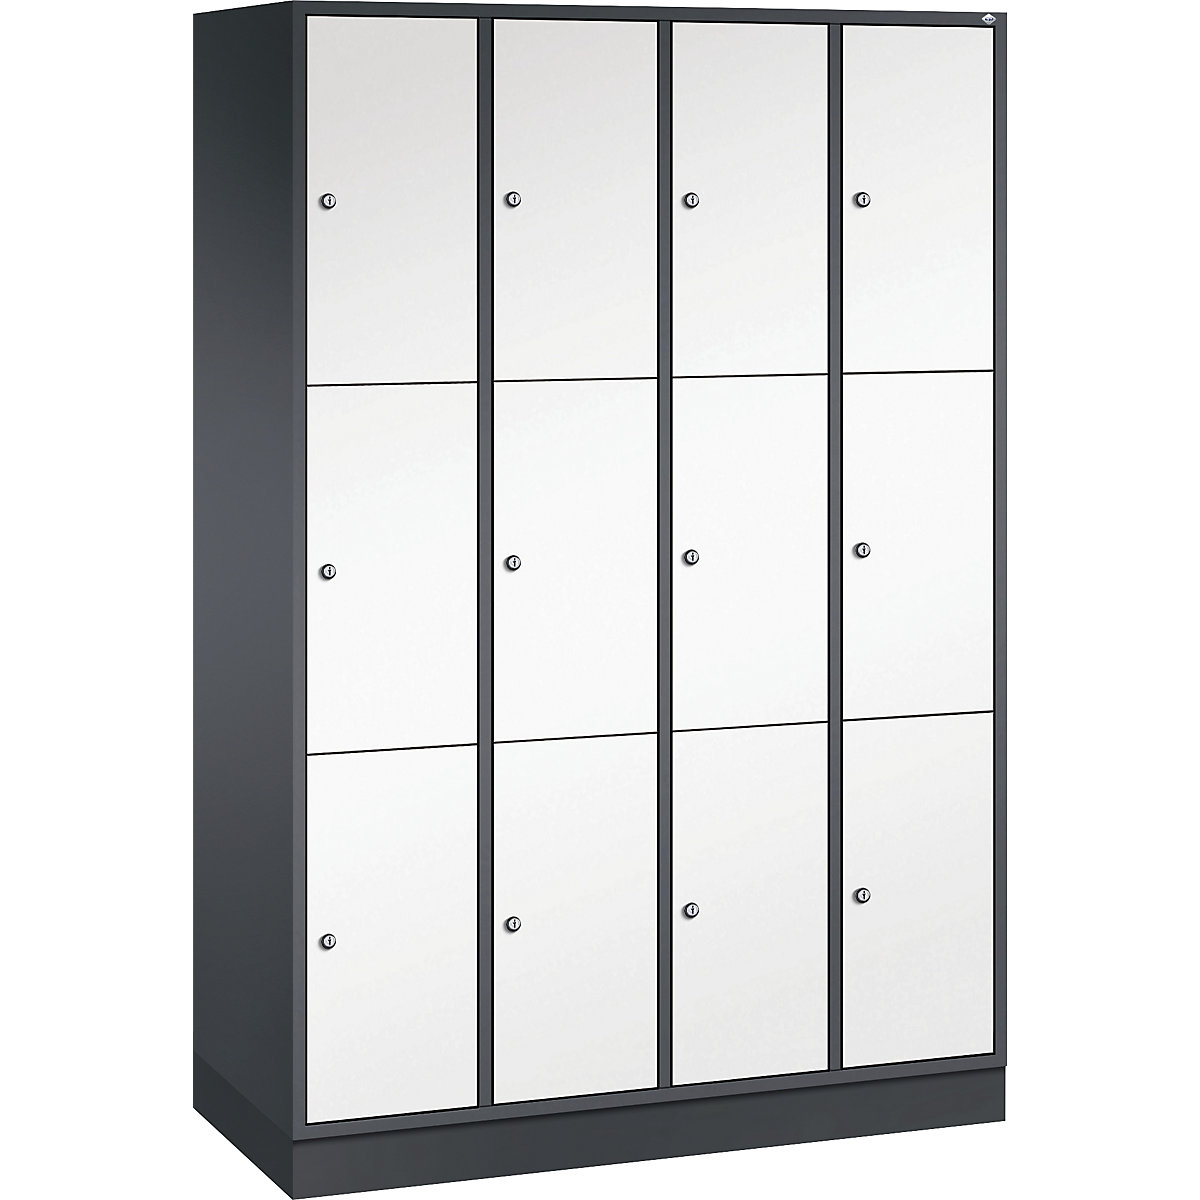 Vestiaire multicases en acier INTRO, casiers hauteur 580 mm – C+P, l x p 1220 x 500 mm, 12 casiers, corps gris noir, portes blanc pur-11